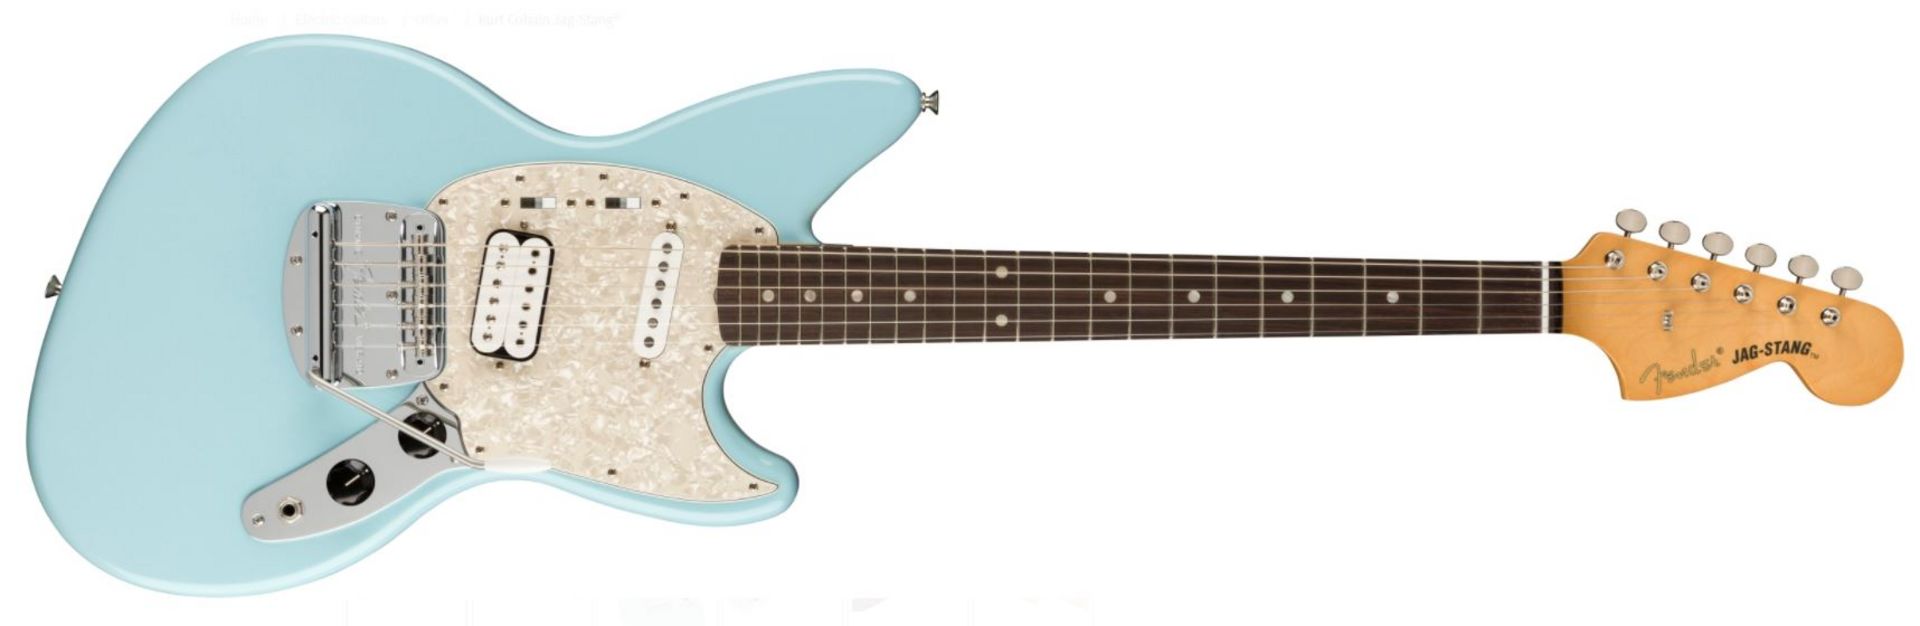 Fender - KURT COBAIN JAG-STANG Sonic Blue